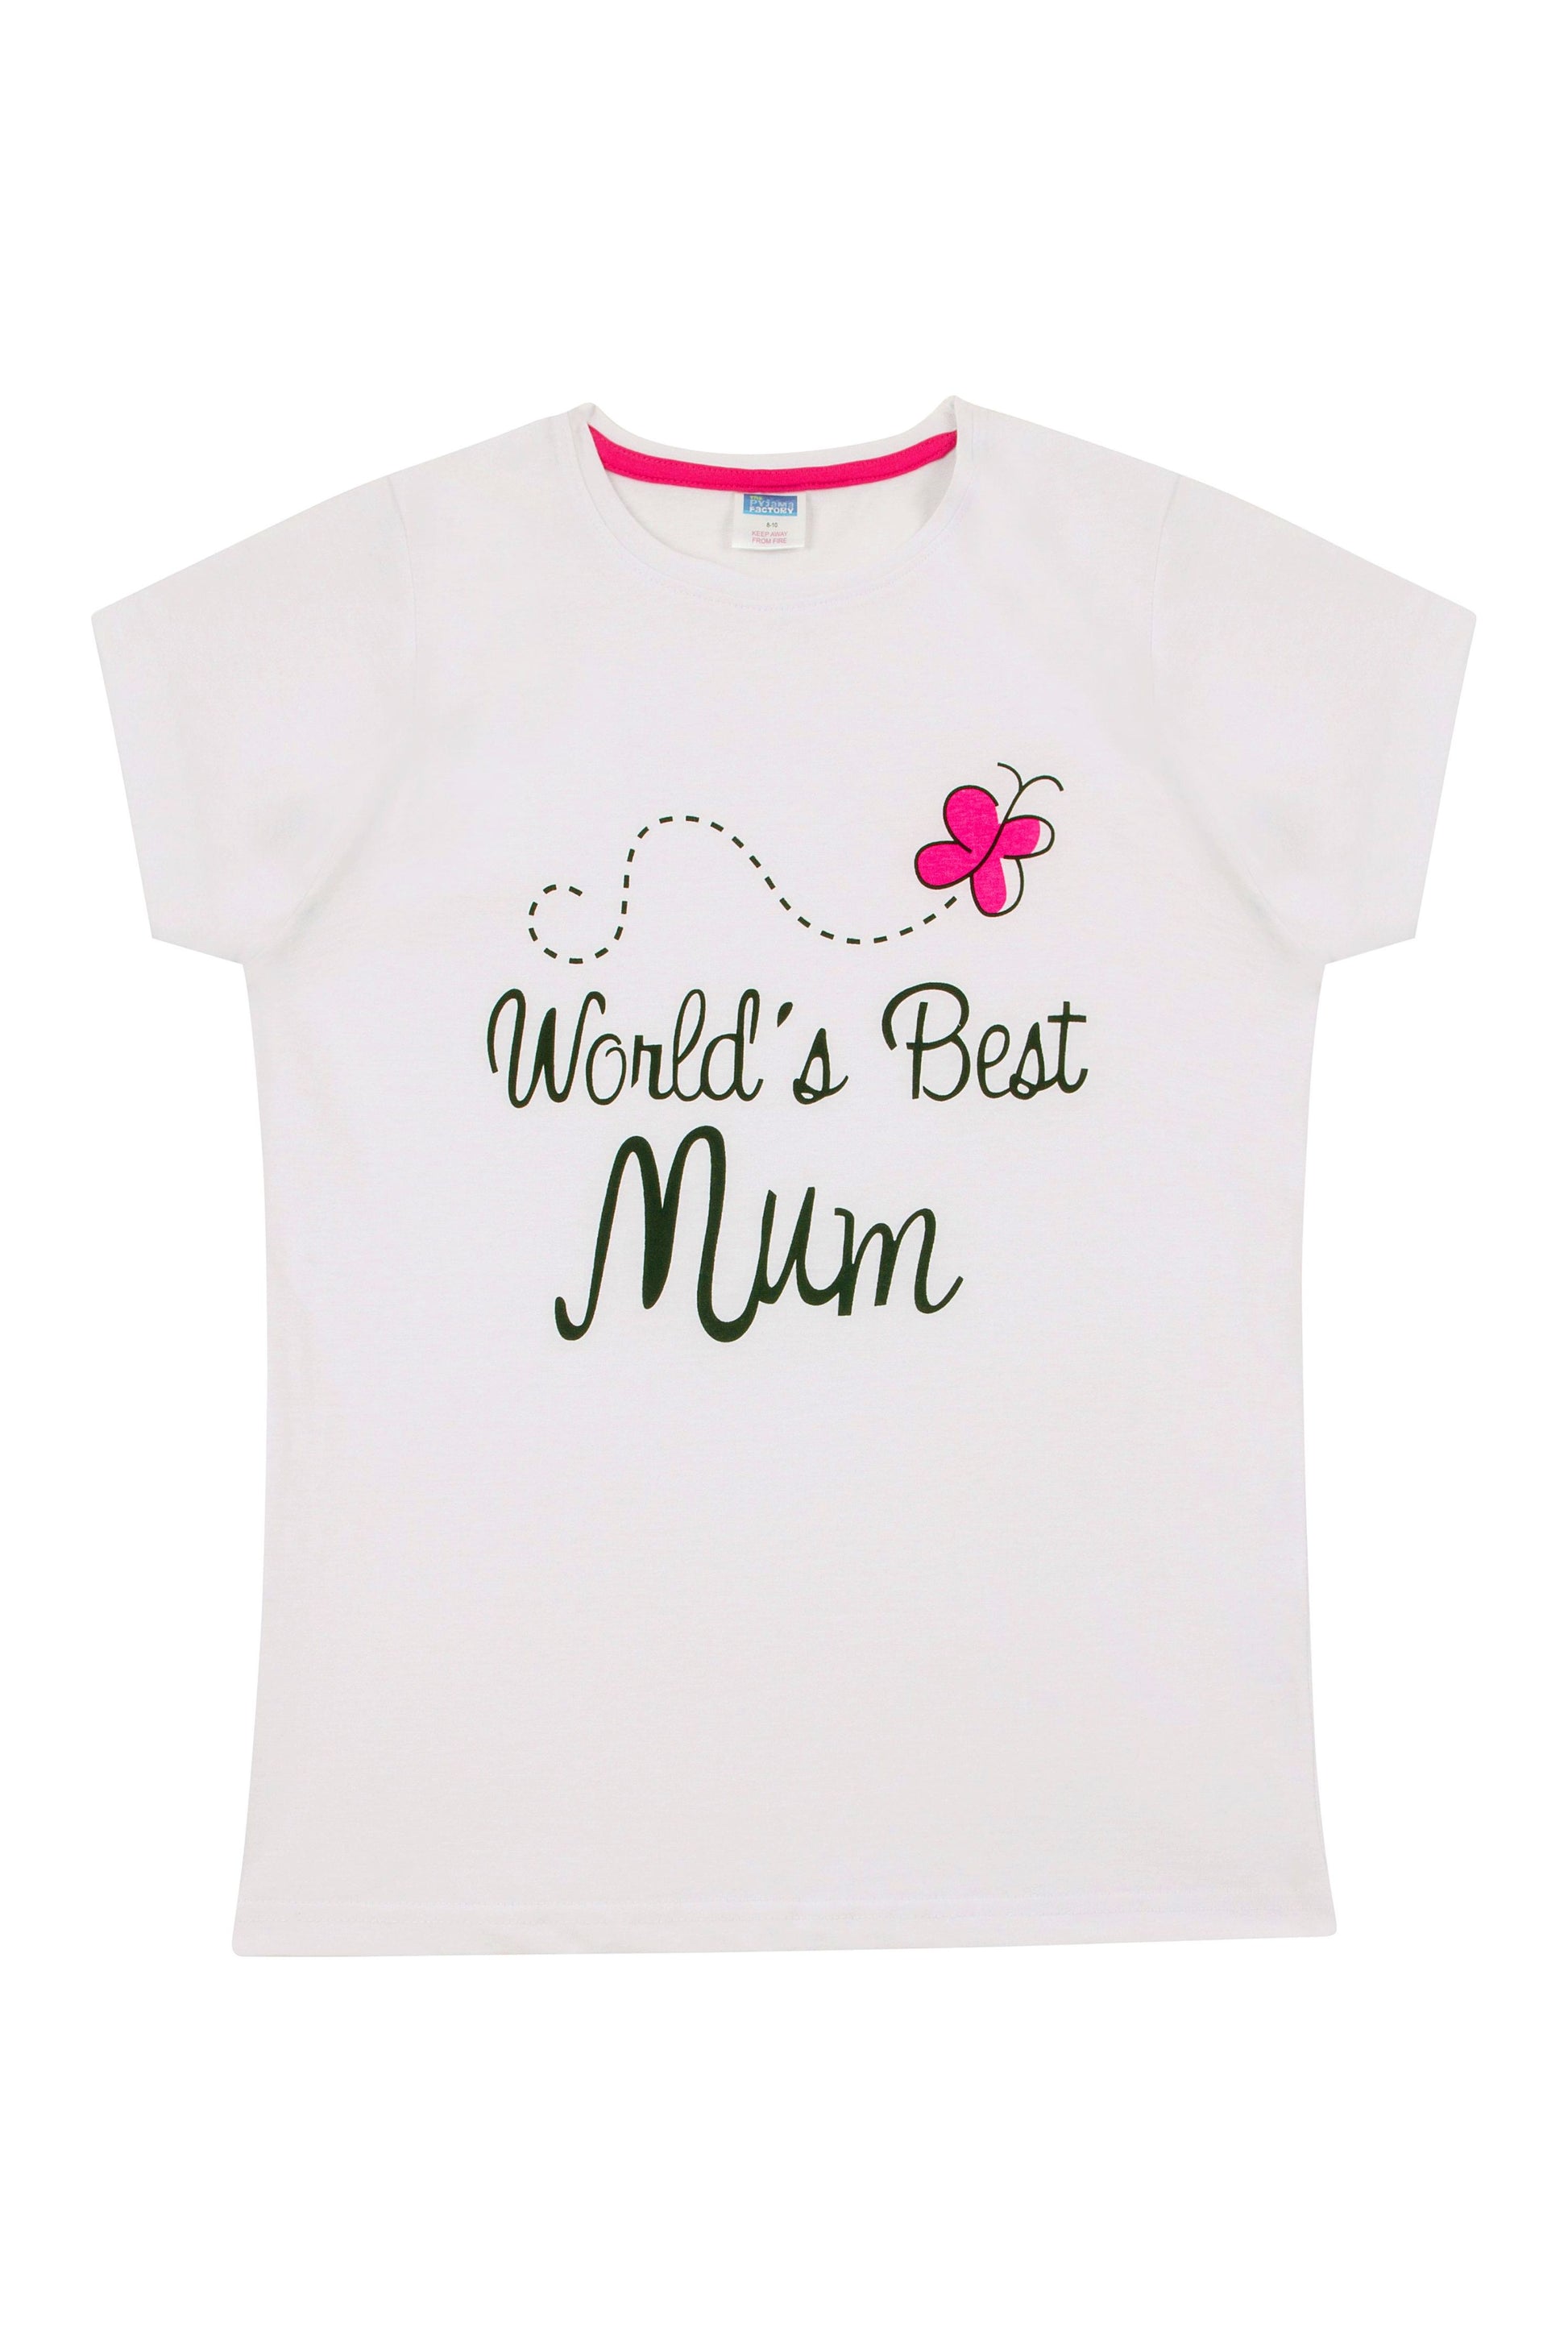 Ladies World's Best Mum Short Pyjamas - Pyjamas.com